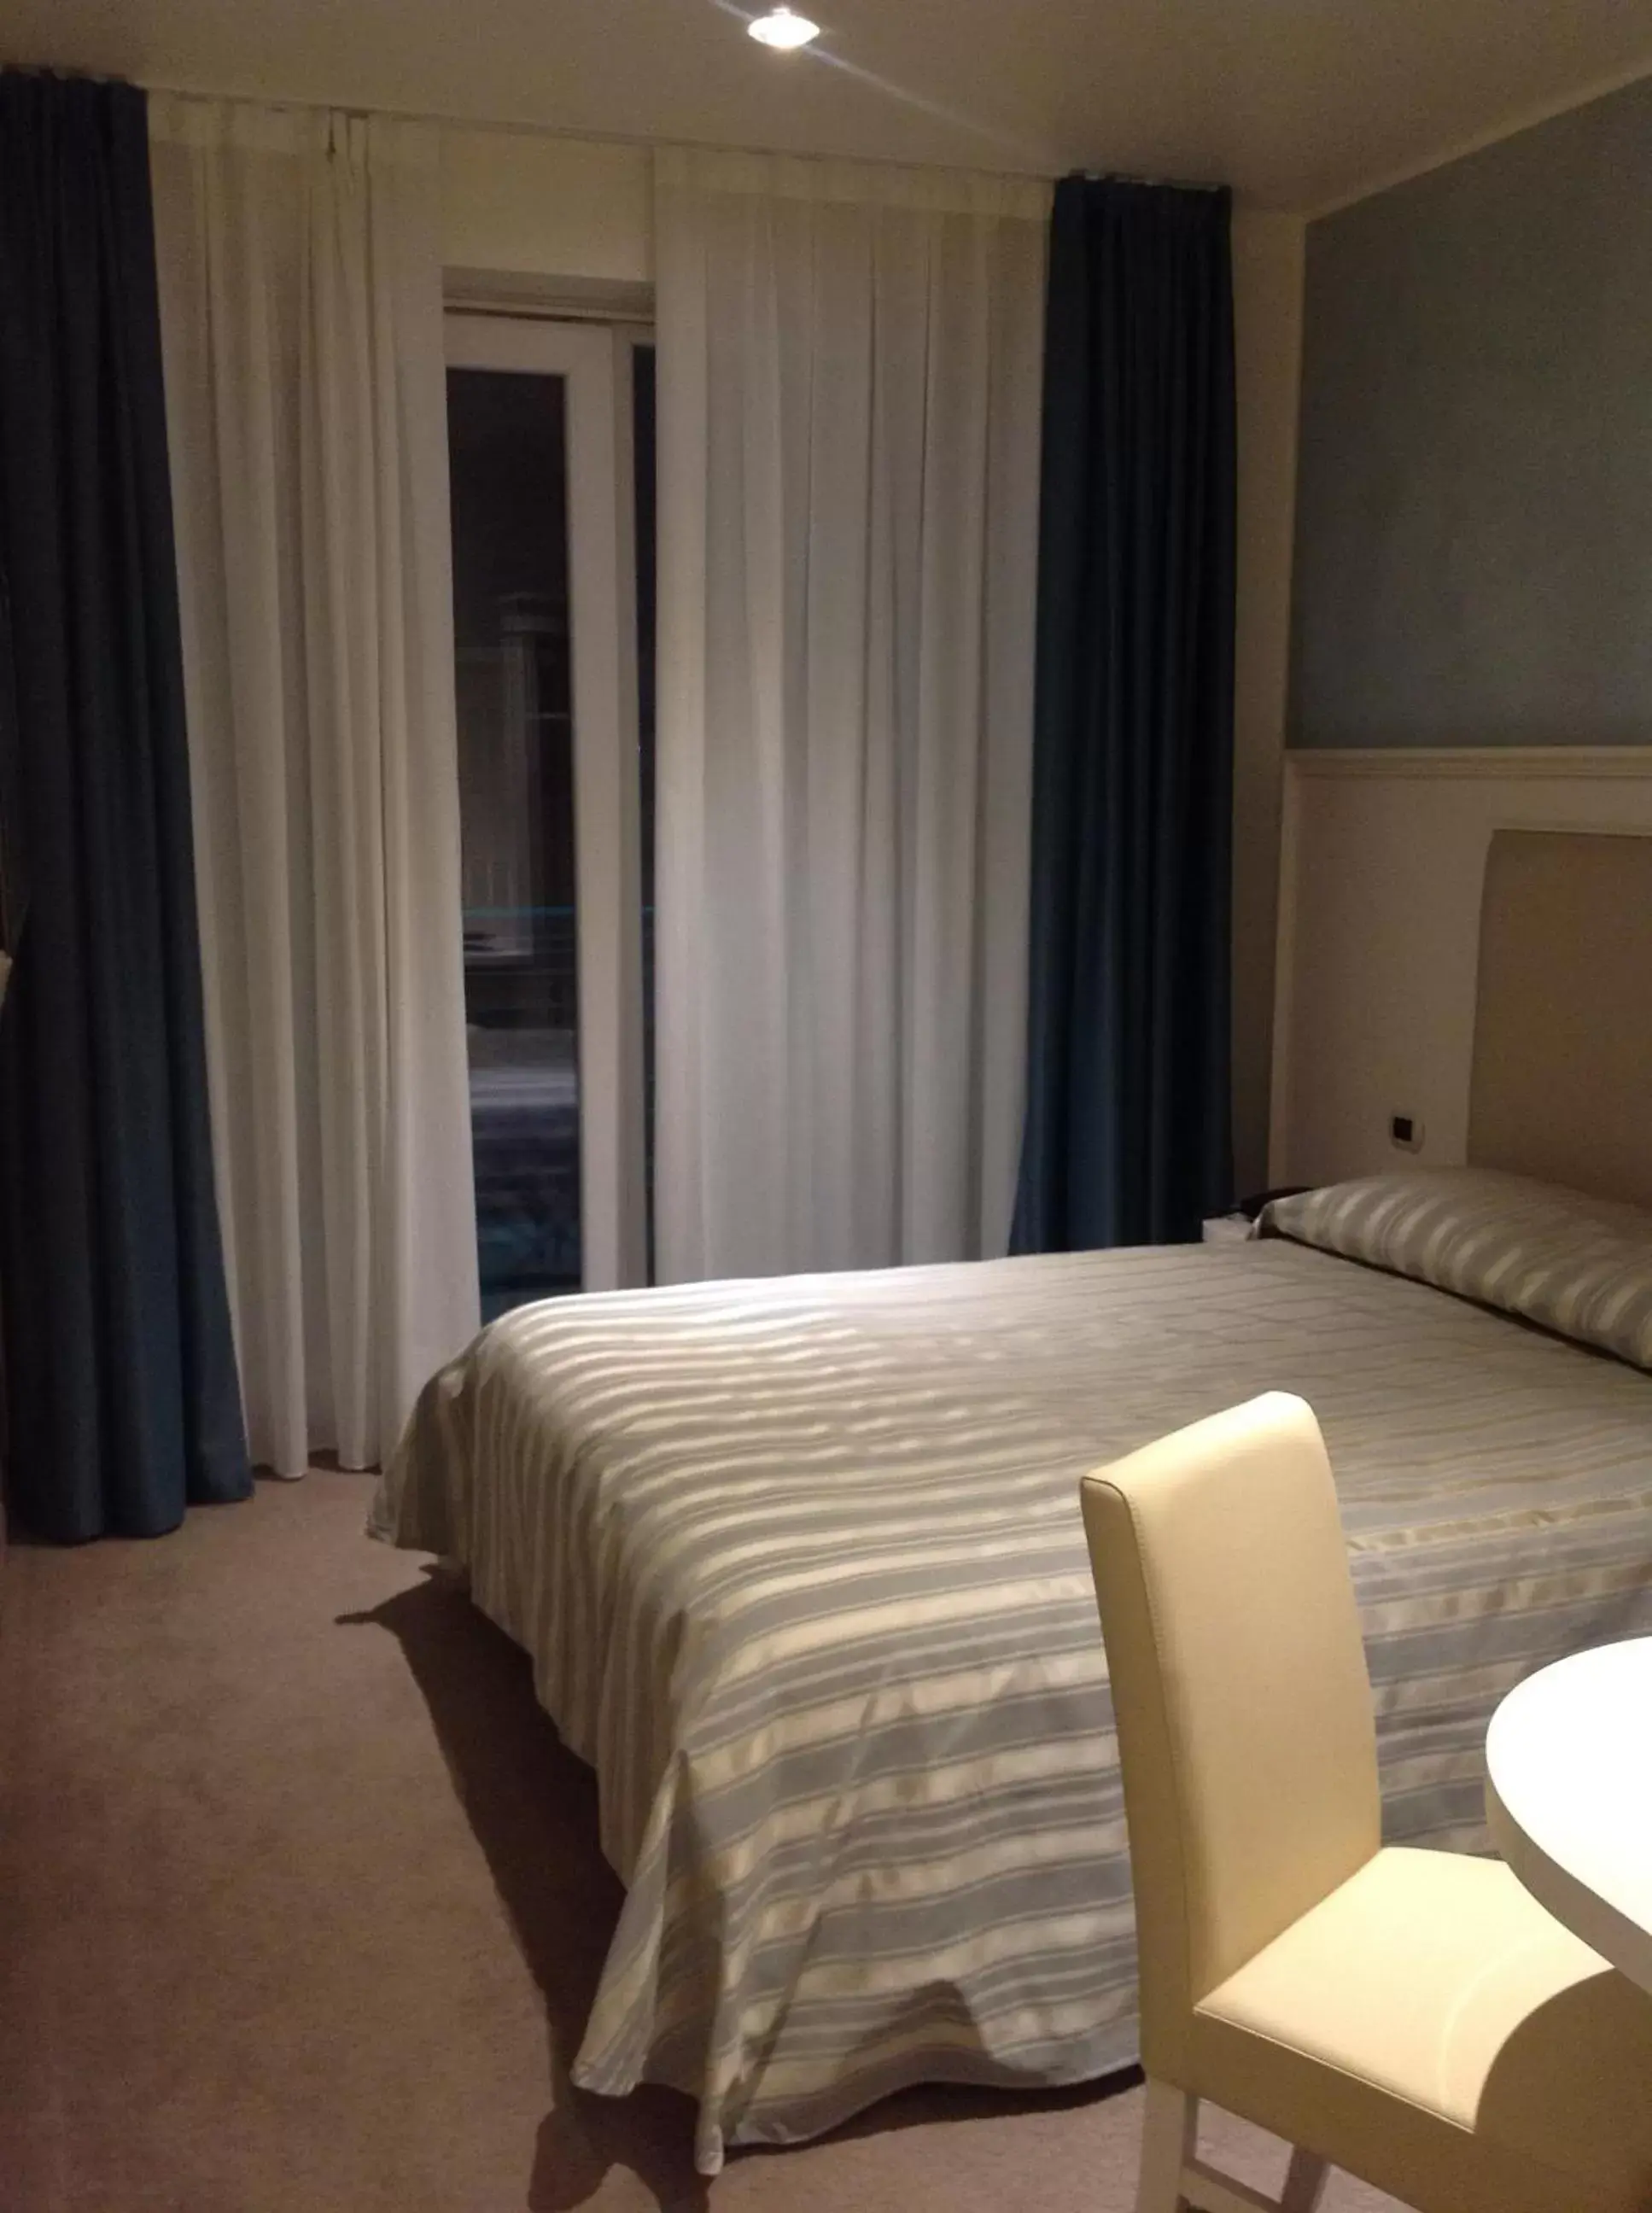 Bedroom, Bed in Palace Hotel "La CONCHIGLIA D' ORO"